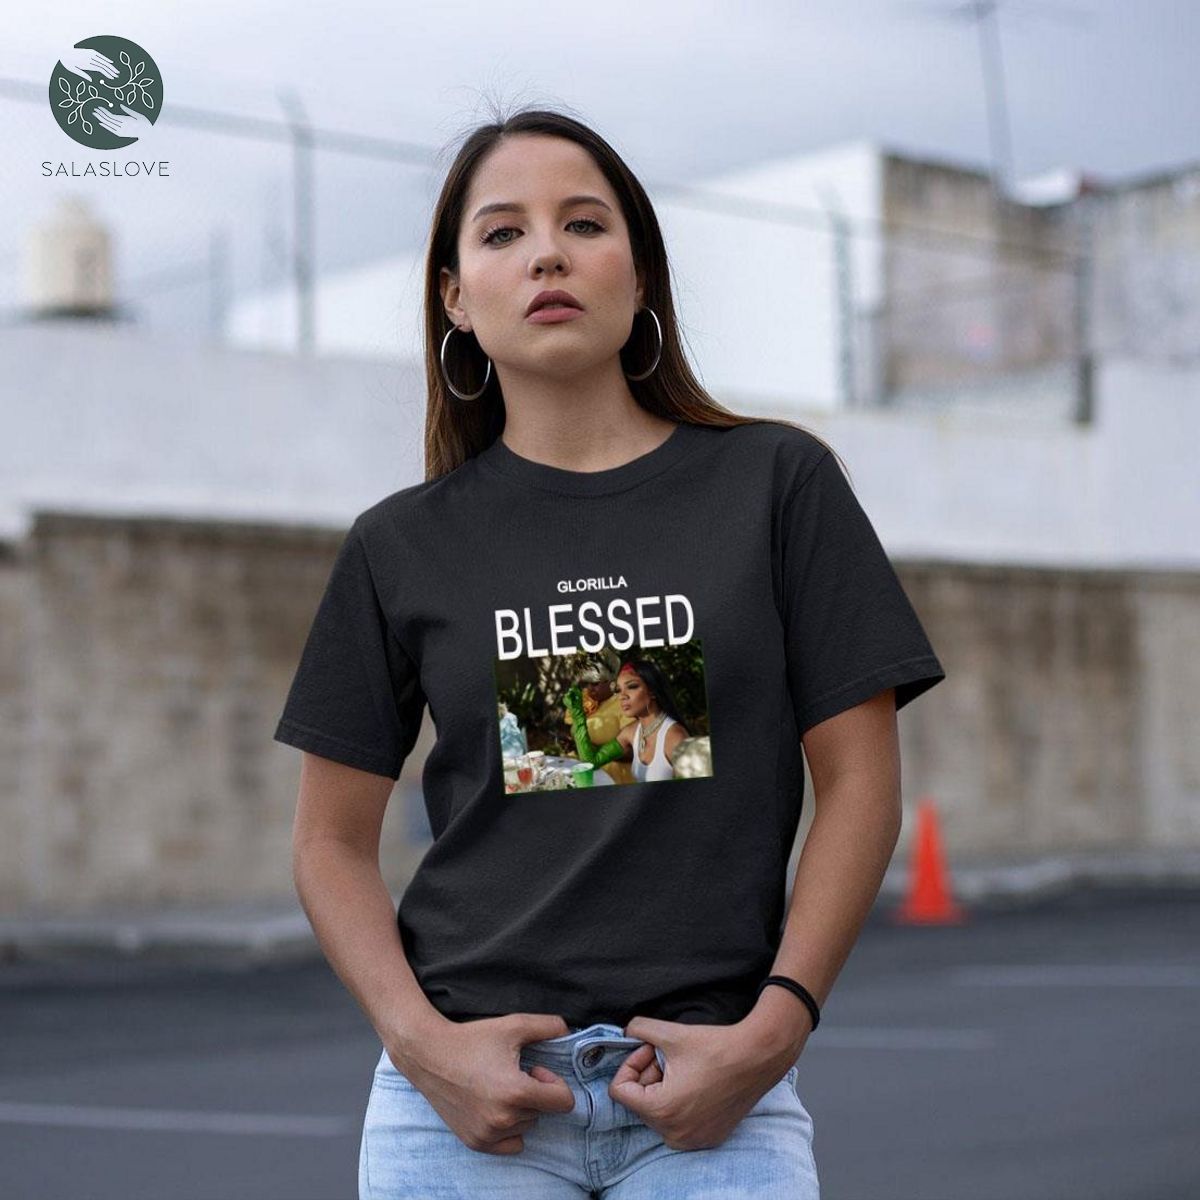 Glorrilla - Blessed New Single Shirt Gift For Fan